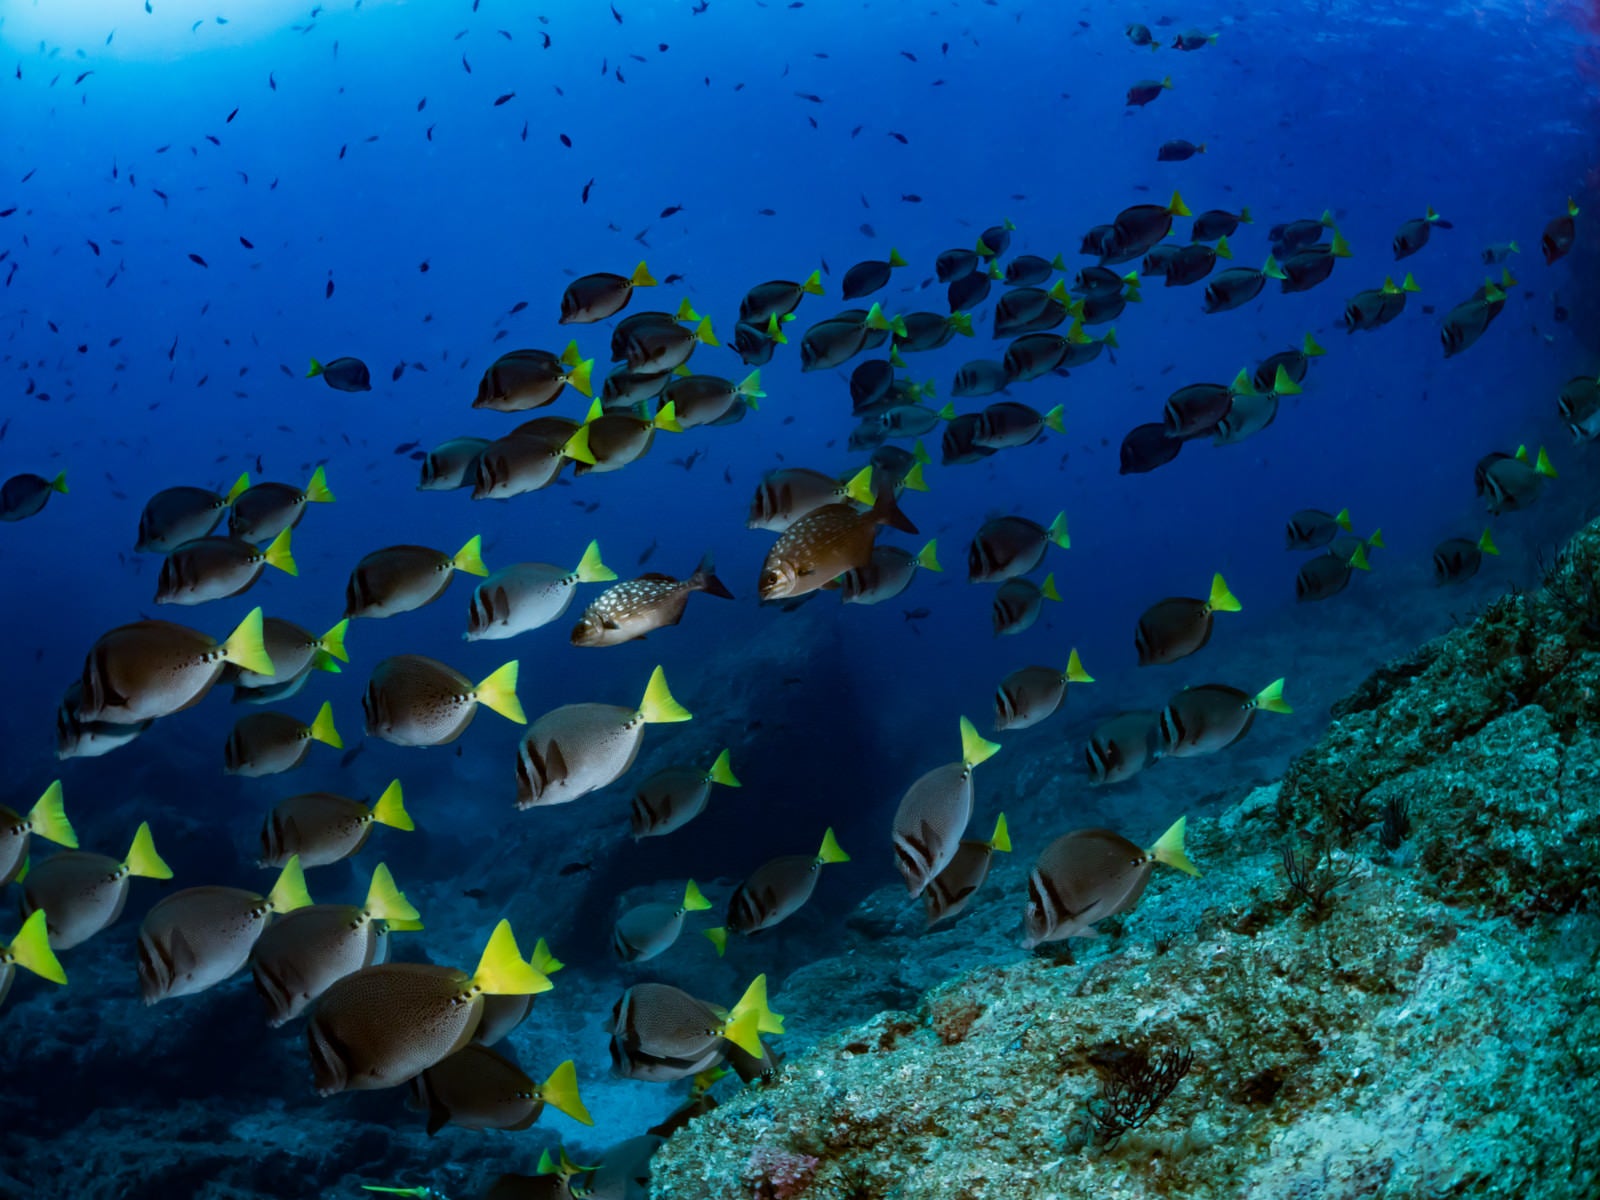 「コルテス海を泳ぐイエローテイルサージョンフィッシュの群れ」の写真